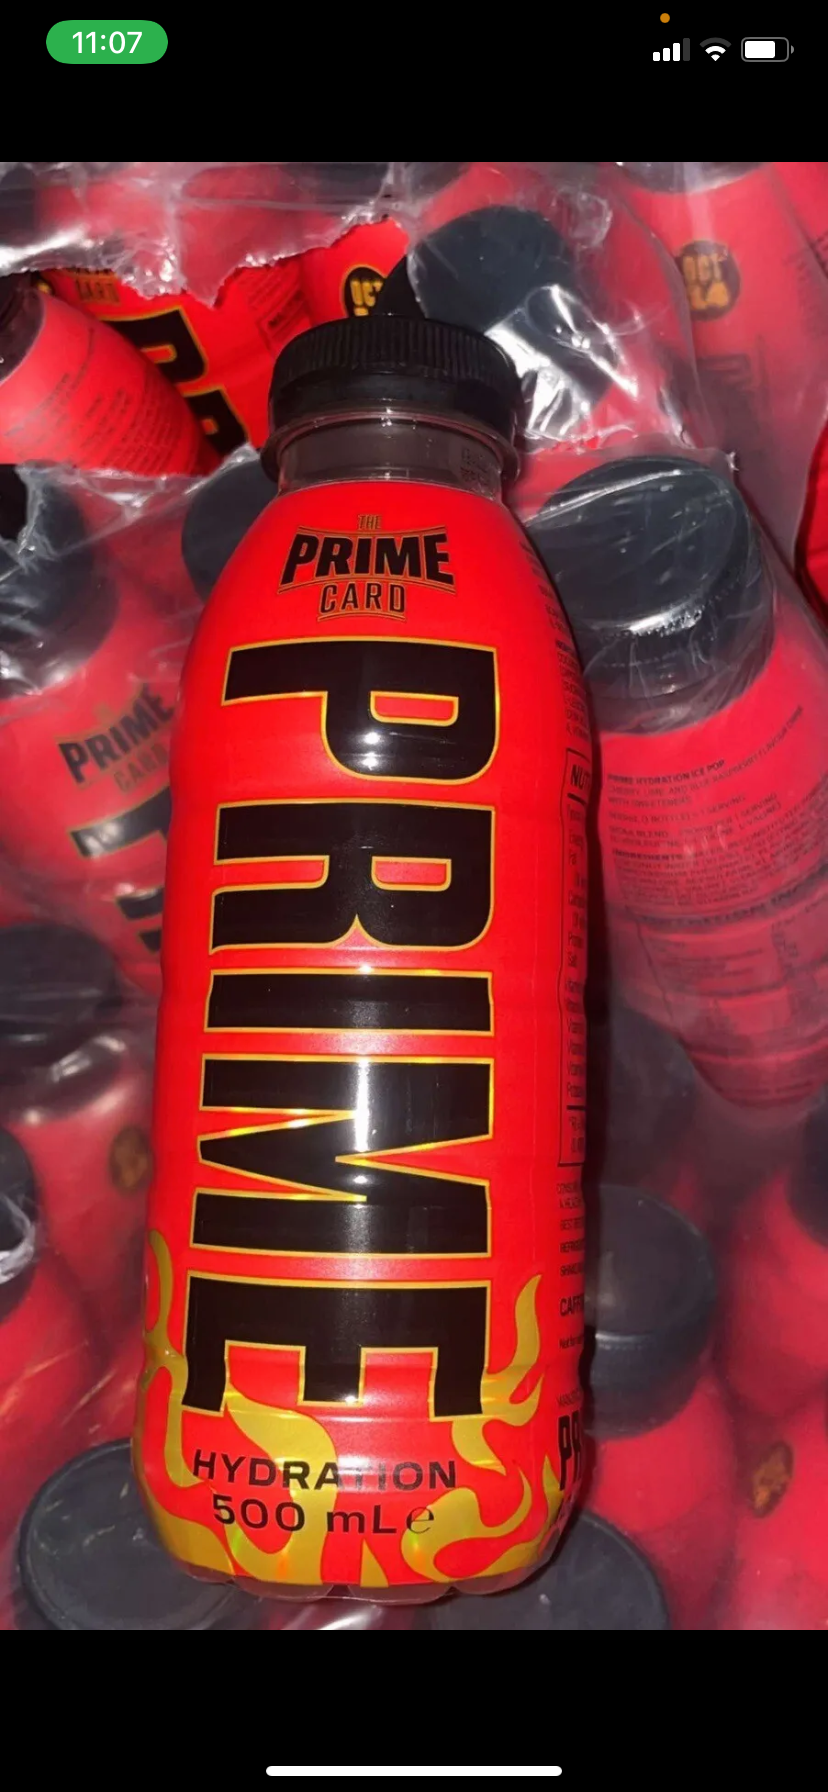 Prime Hydration - Prime Card Red Bottle Misfits